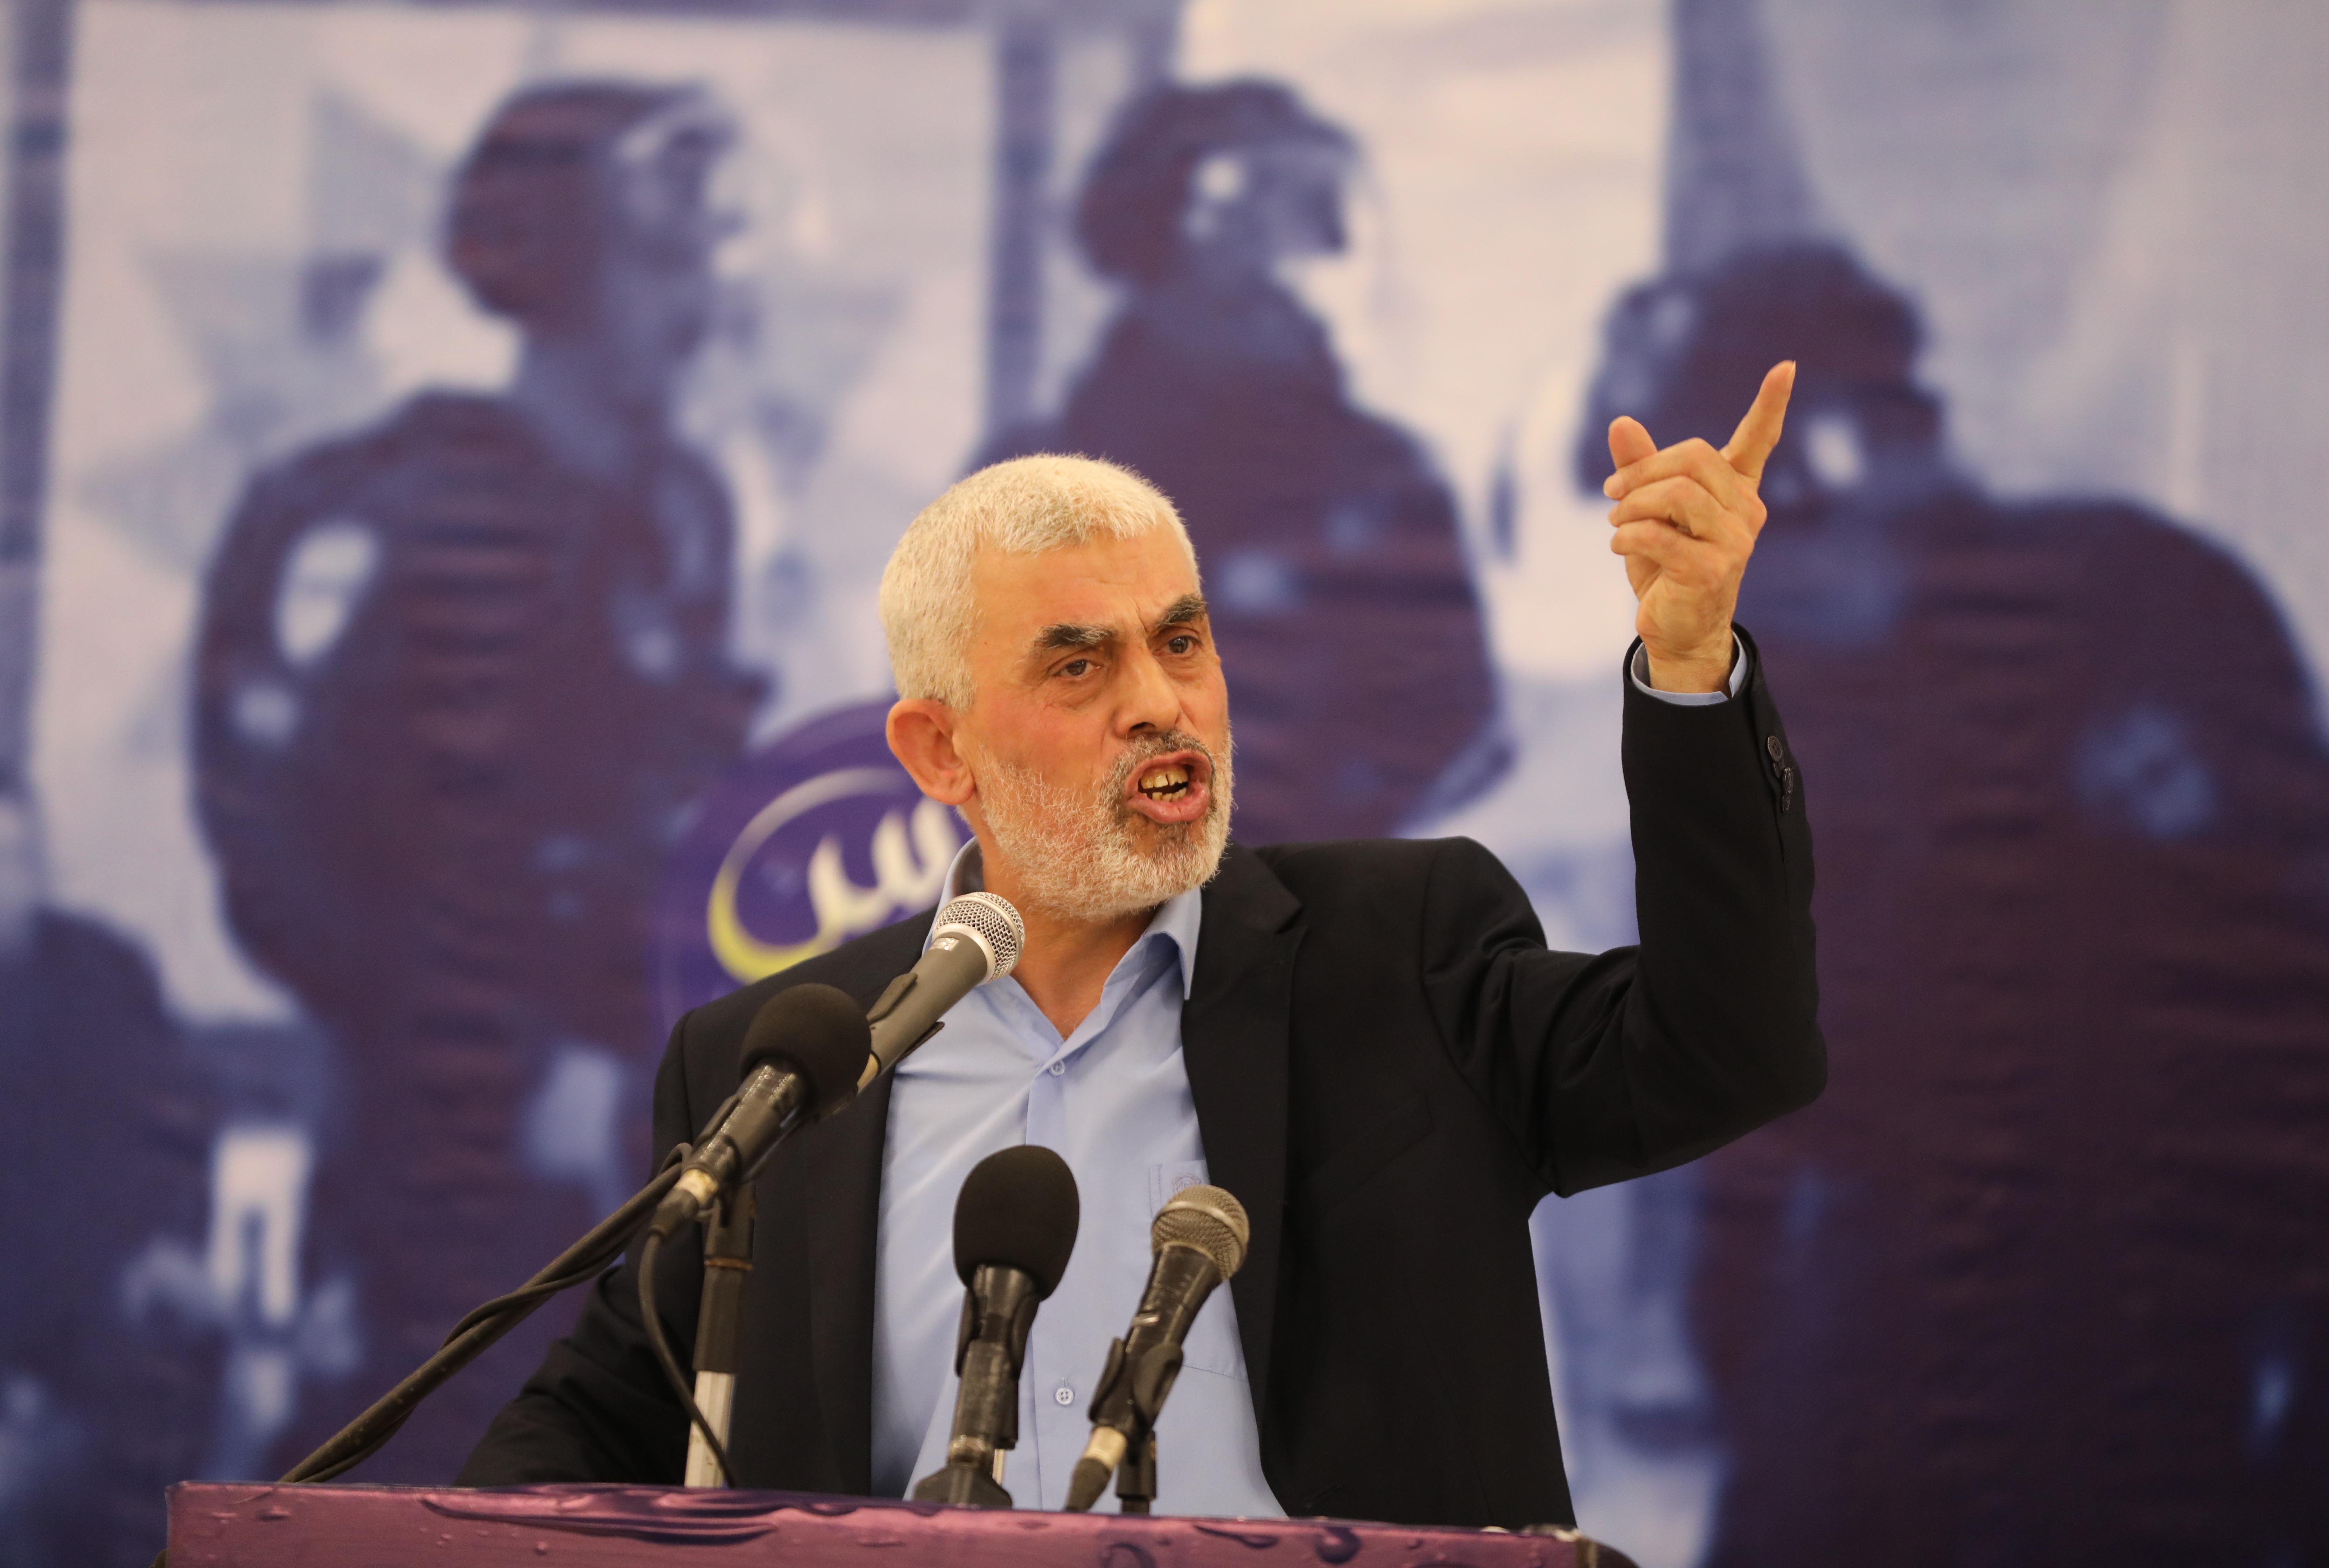 Berichten zufolge nähert sich die IDF dem Hamas-Terrorchef Yahya Sinwar, der in den letzten Tagen nur knapp seiner Gefangennahme entgangen ist